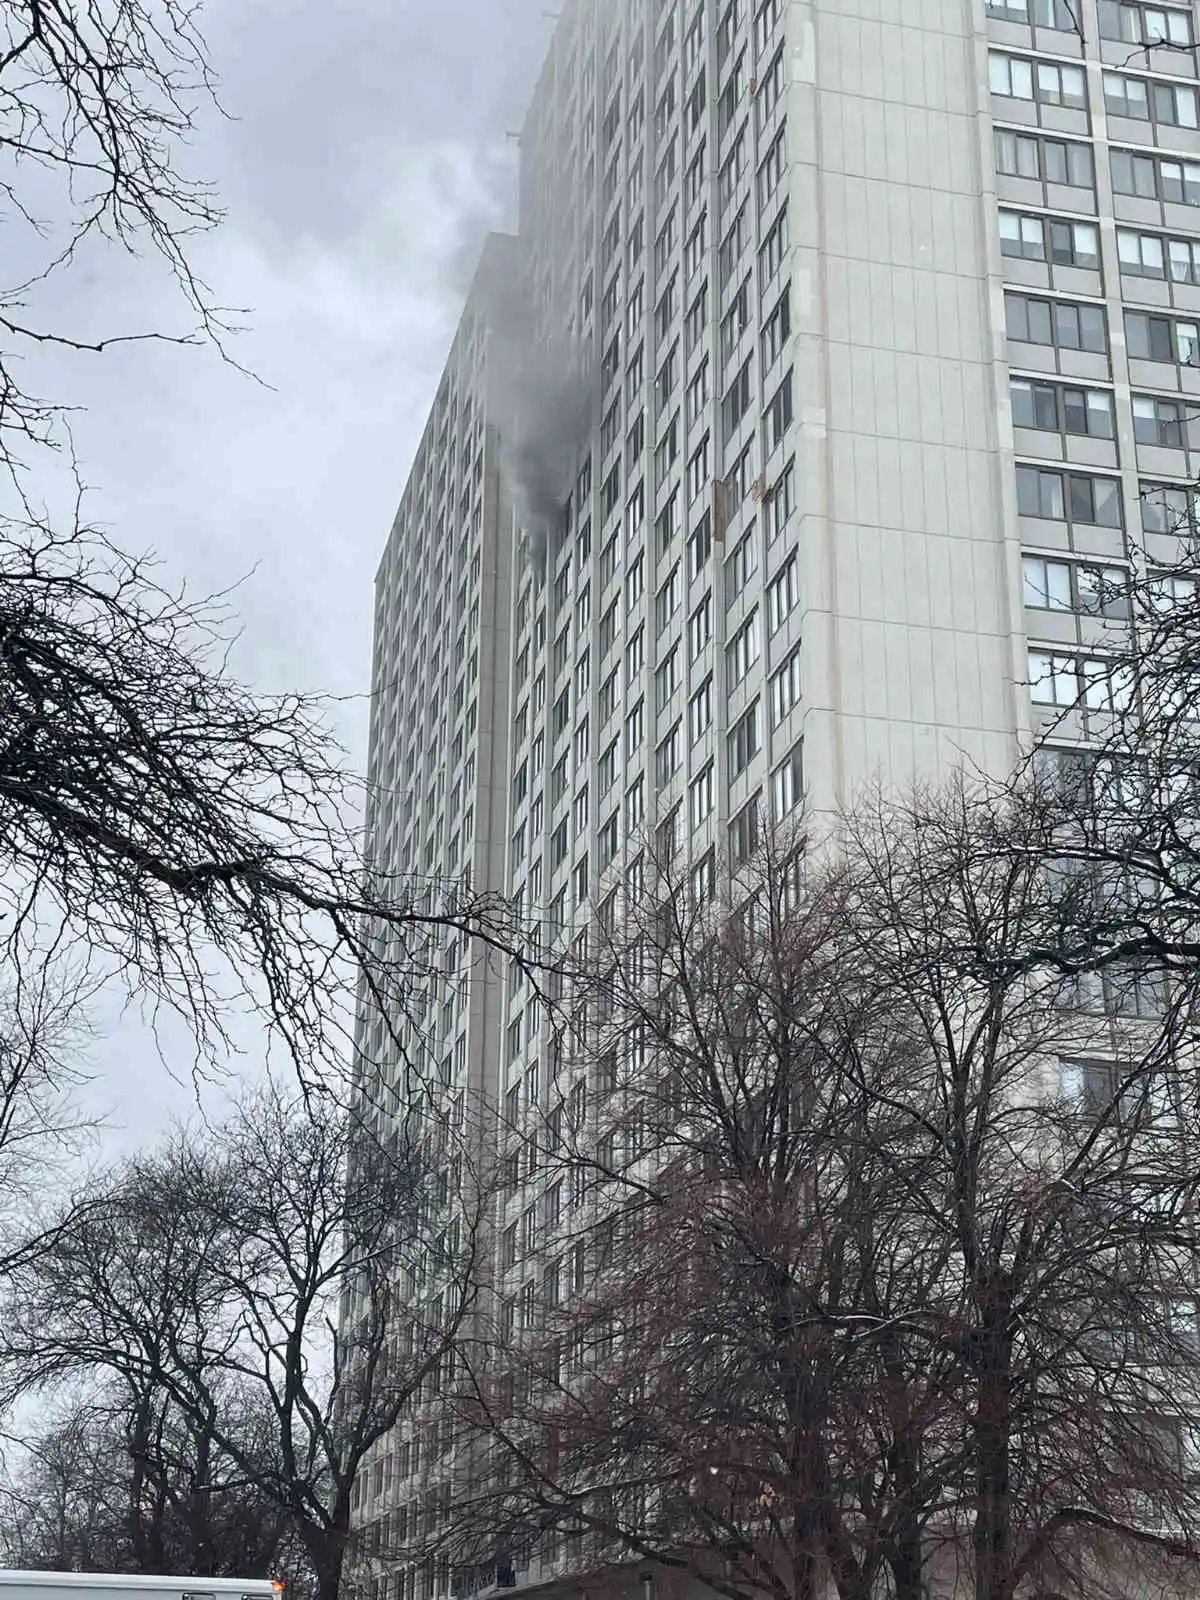 ABD’de 25 katlı binada yangın: 1 ölü, 8 yaralı
